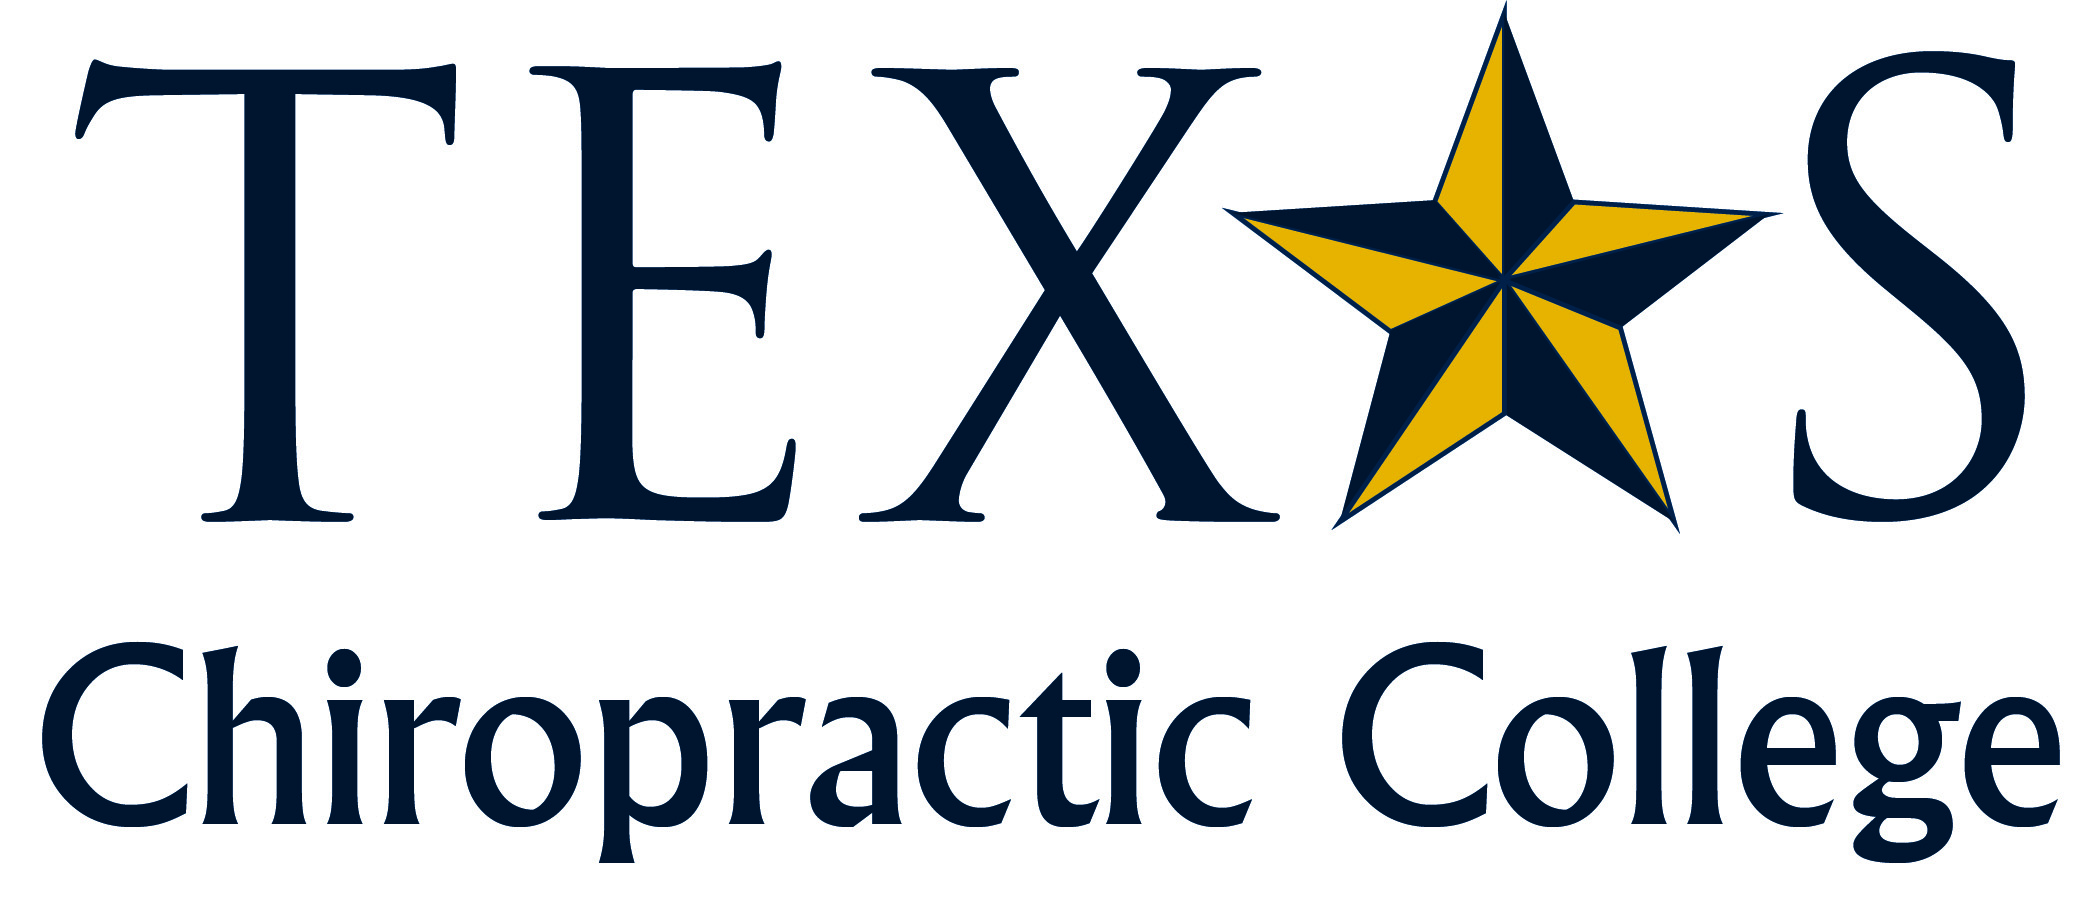 California online chiropractic courses